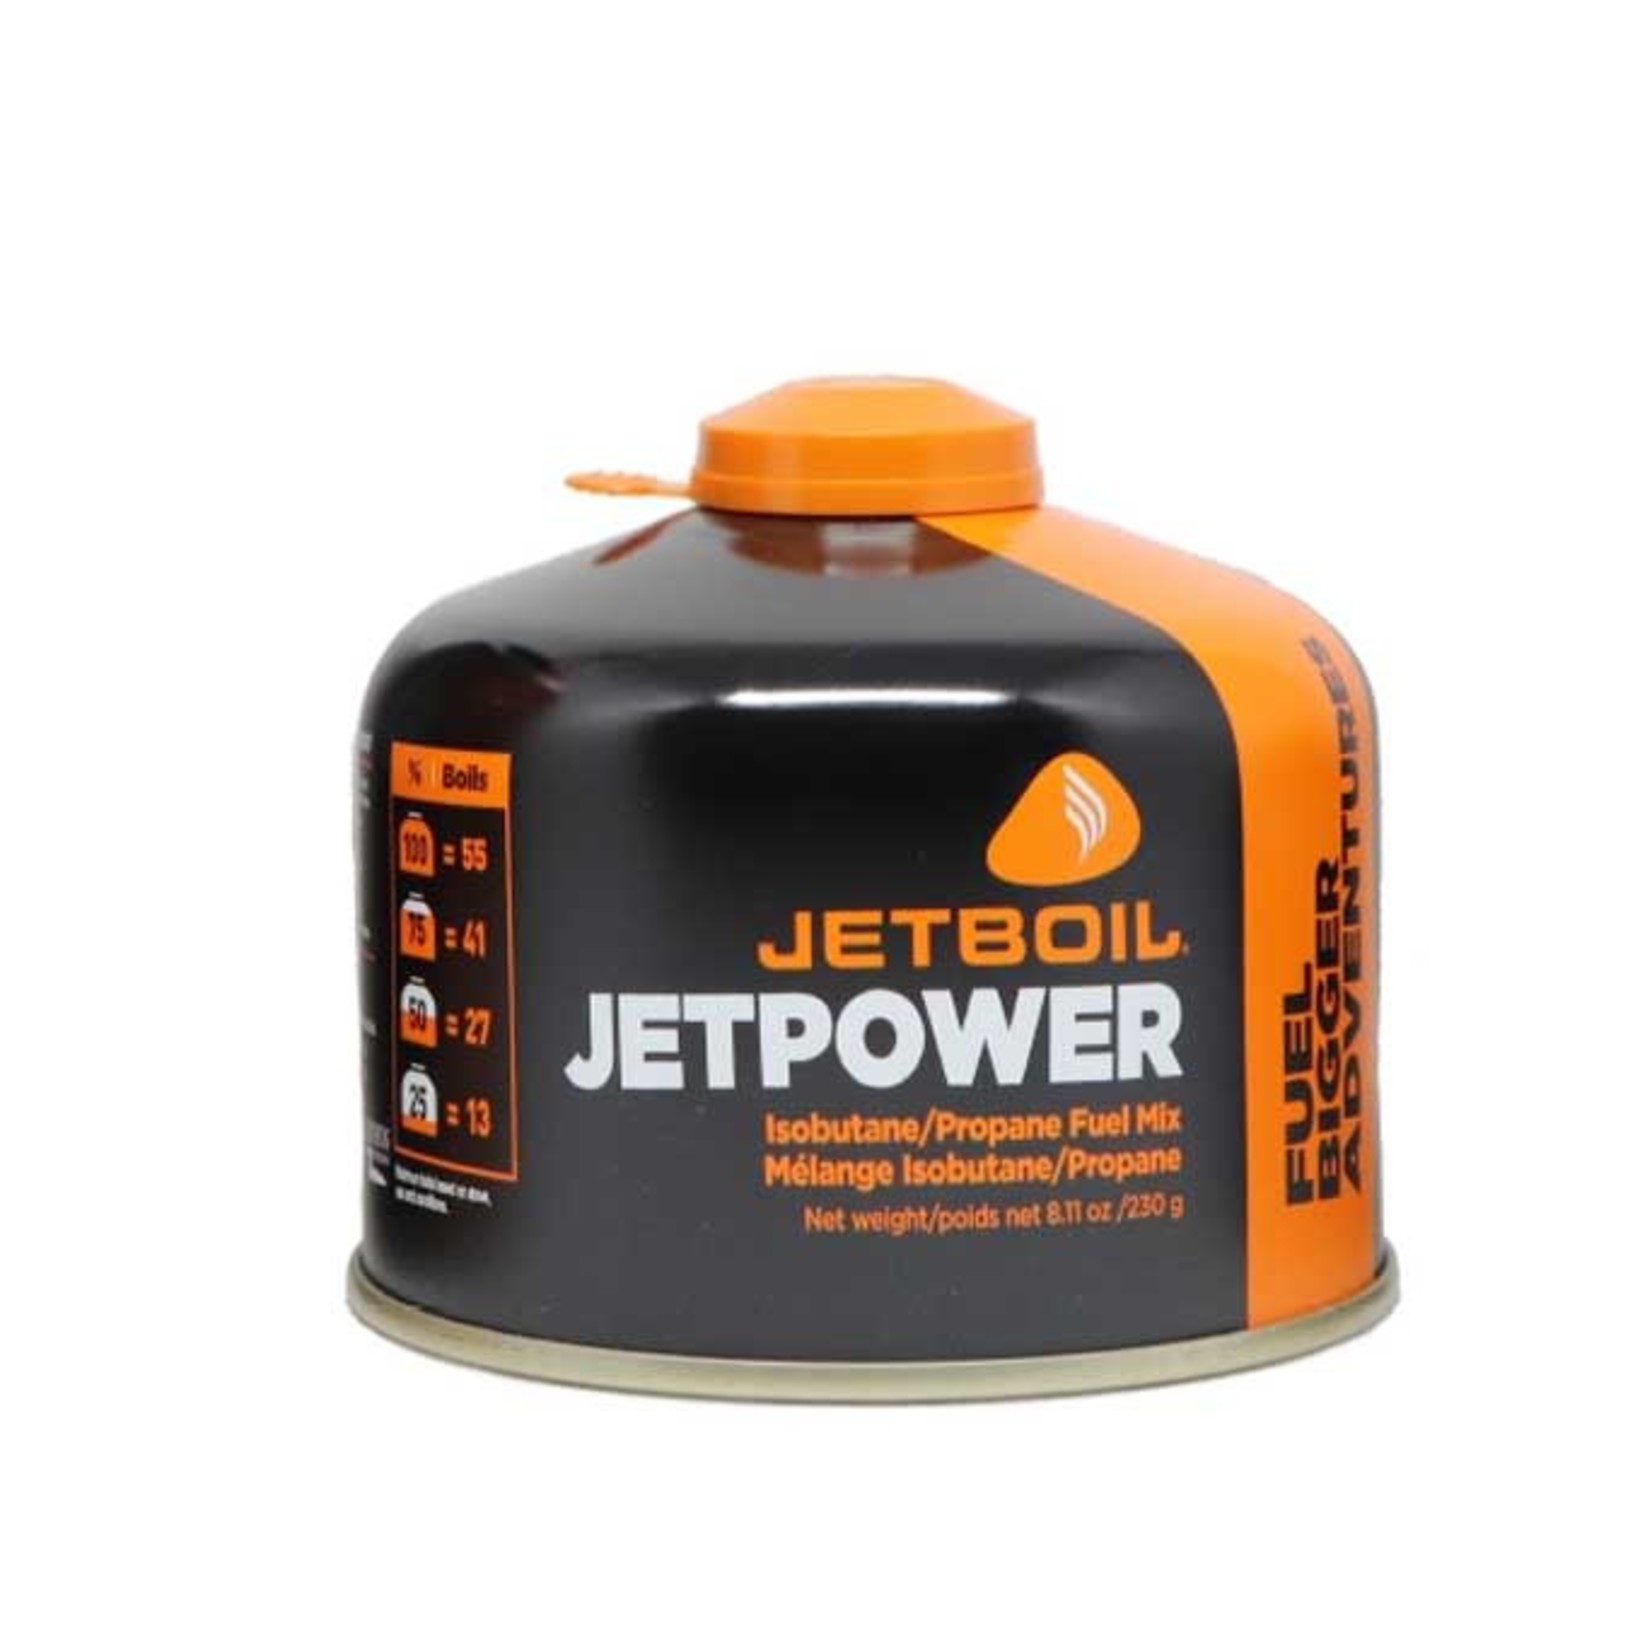 JetBoil Isobutane JETPOWER Fuel